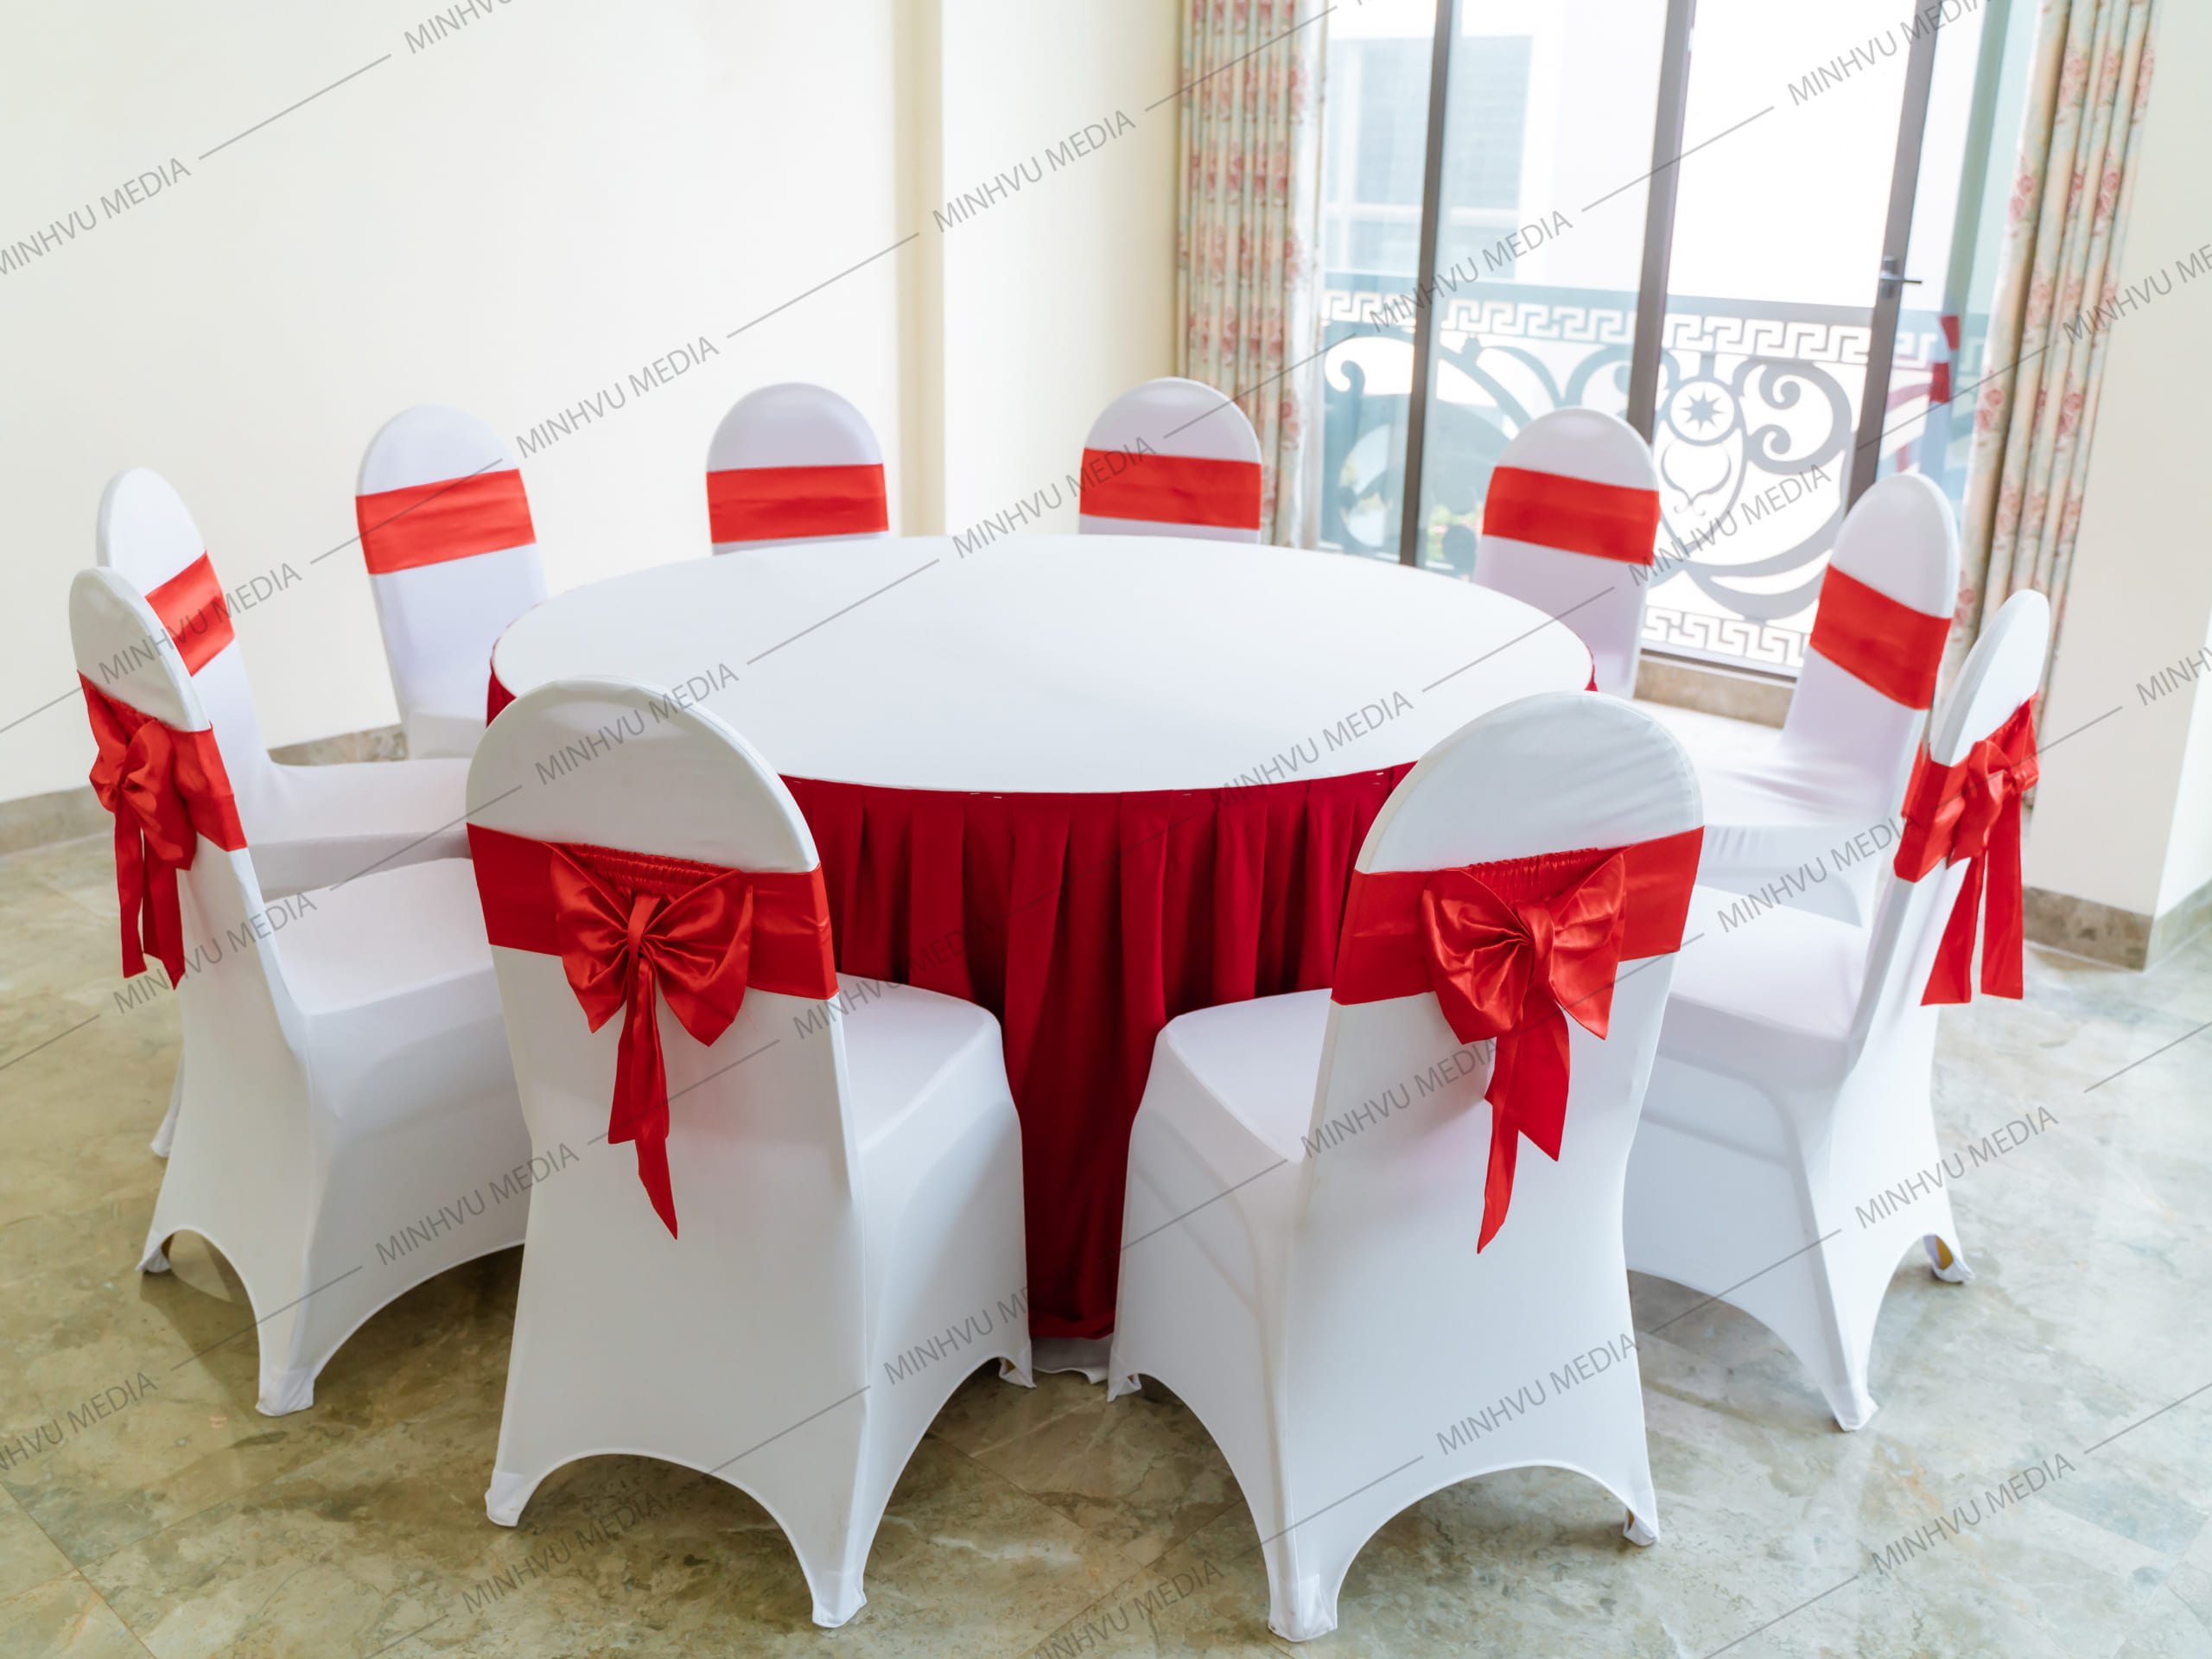 Bàn ghế banquet tròn trắng - đỏ